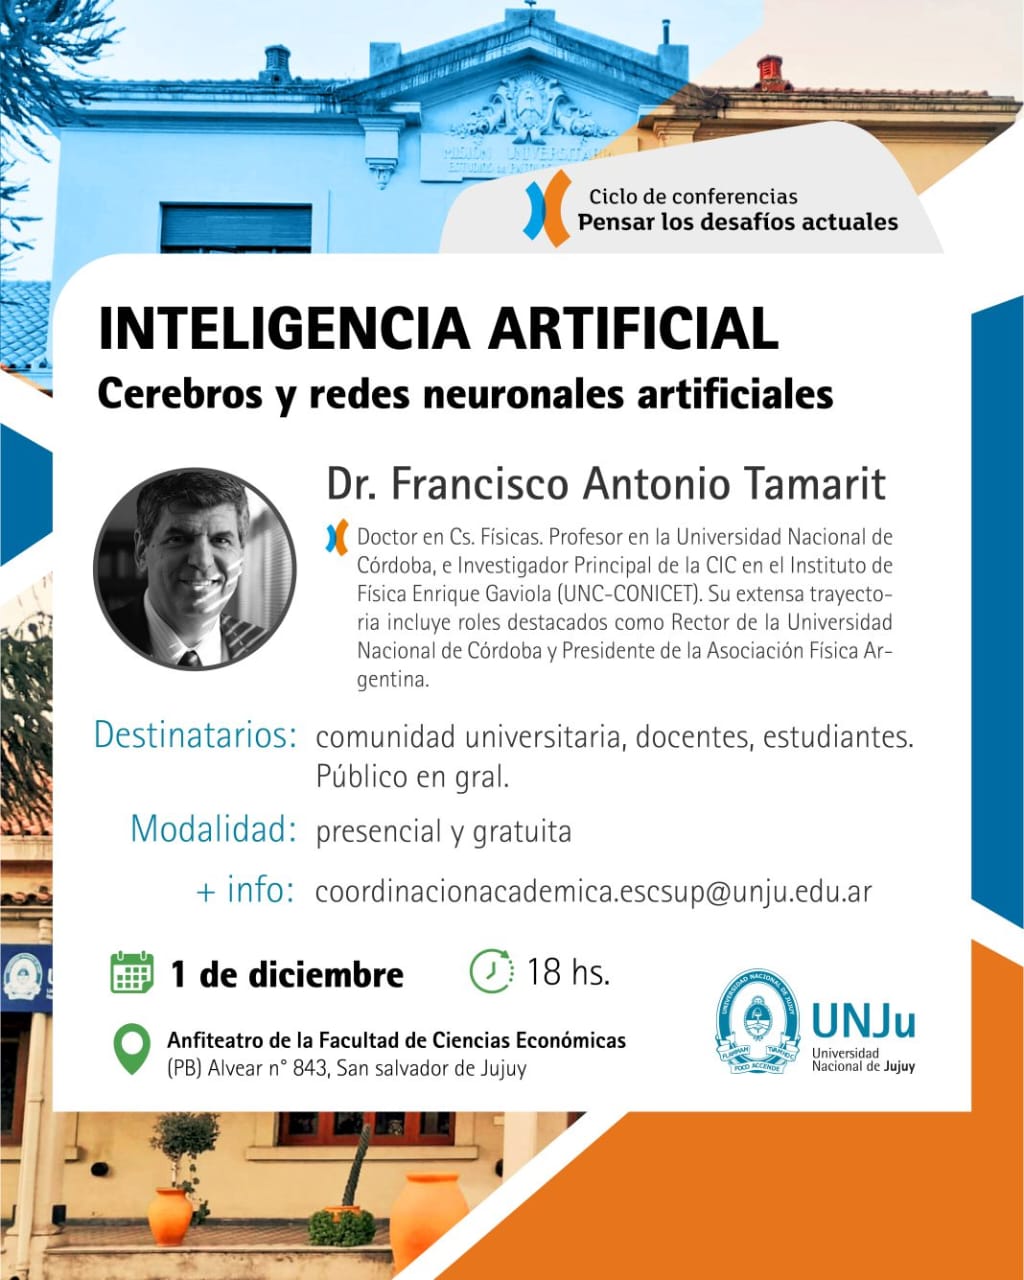 Se dictará la conferencia  “Inteligencia Artificial: Cerebros y Redes Neuronales Artificiales” organizada por la UNJu